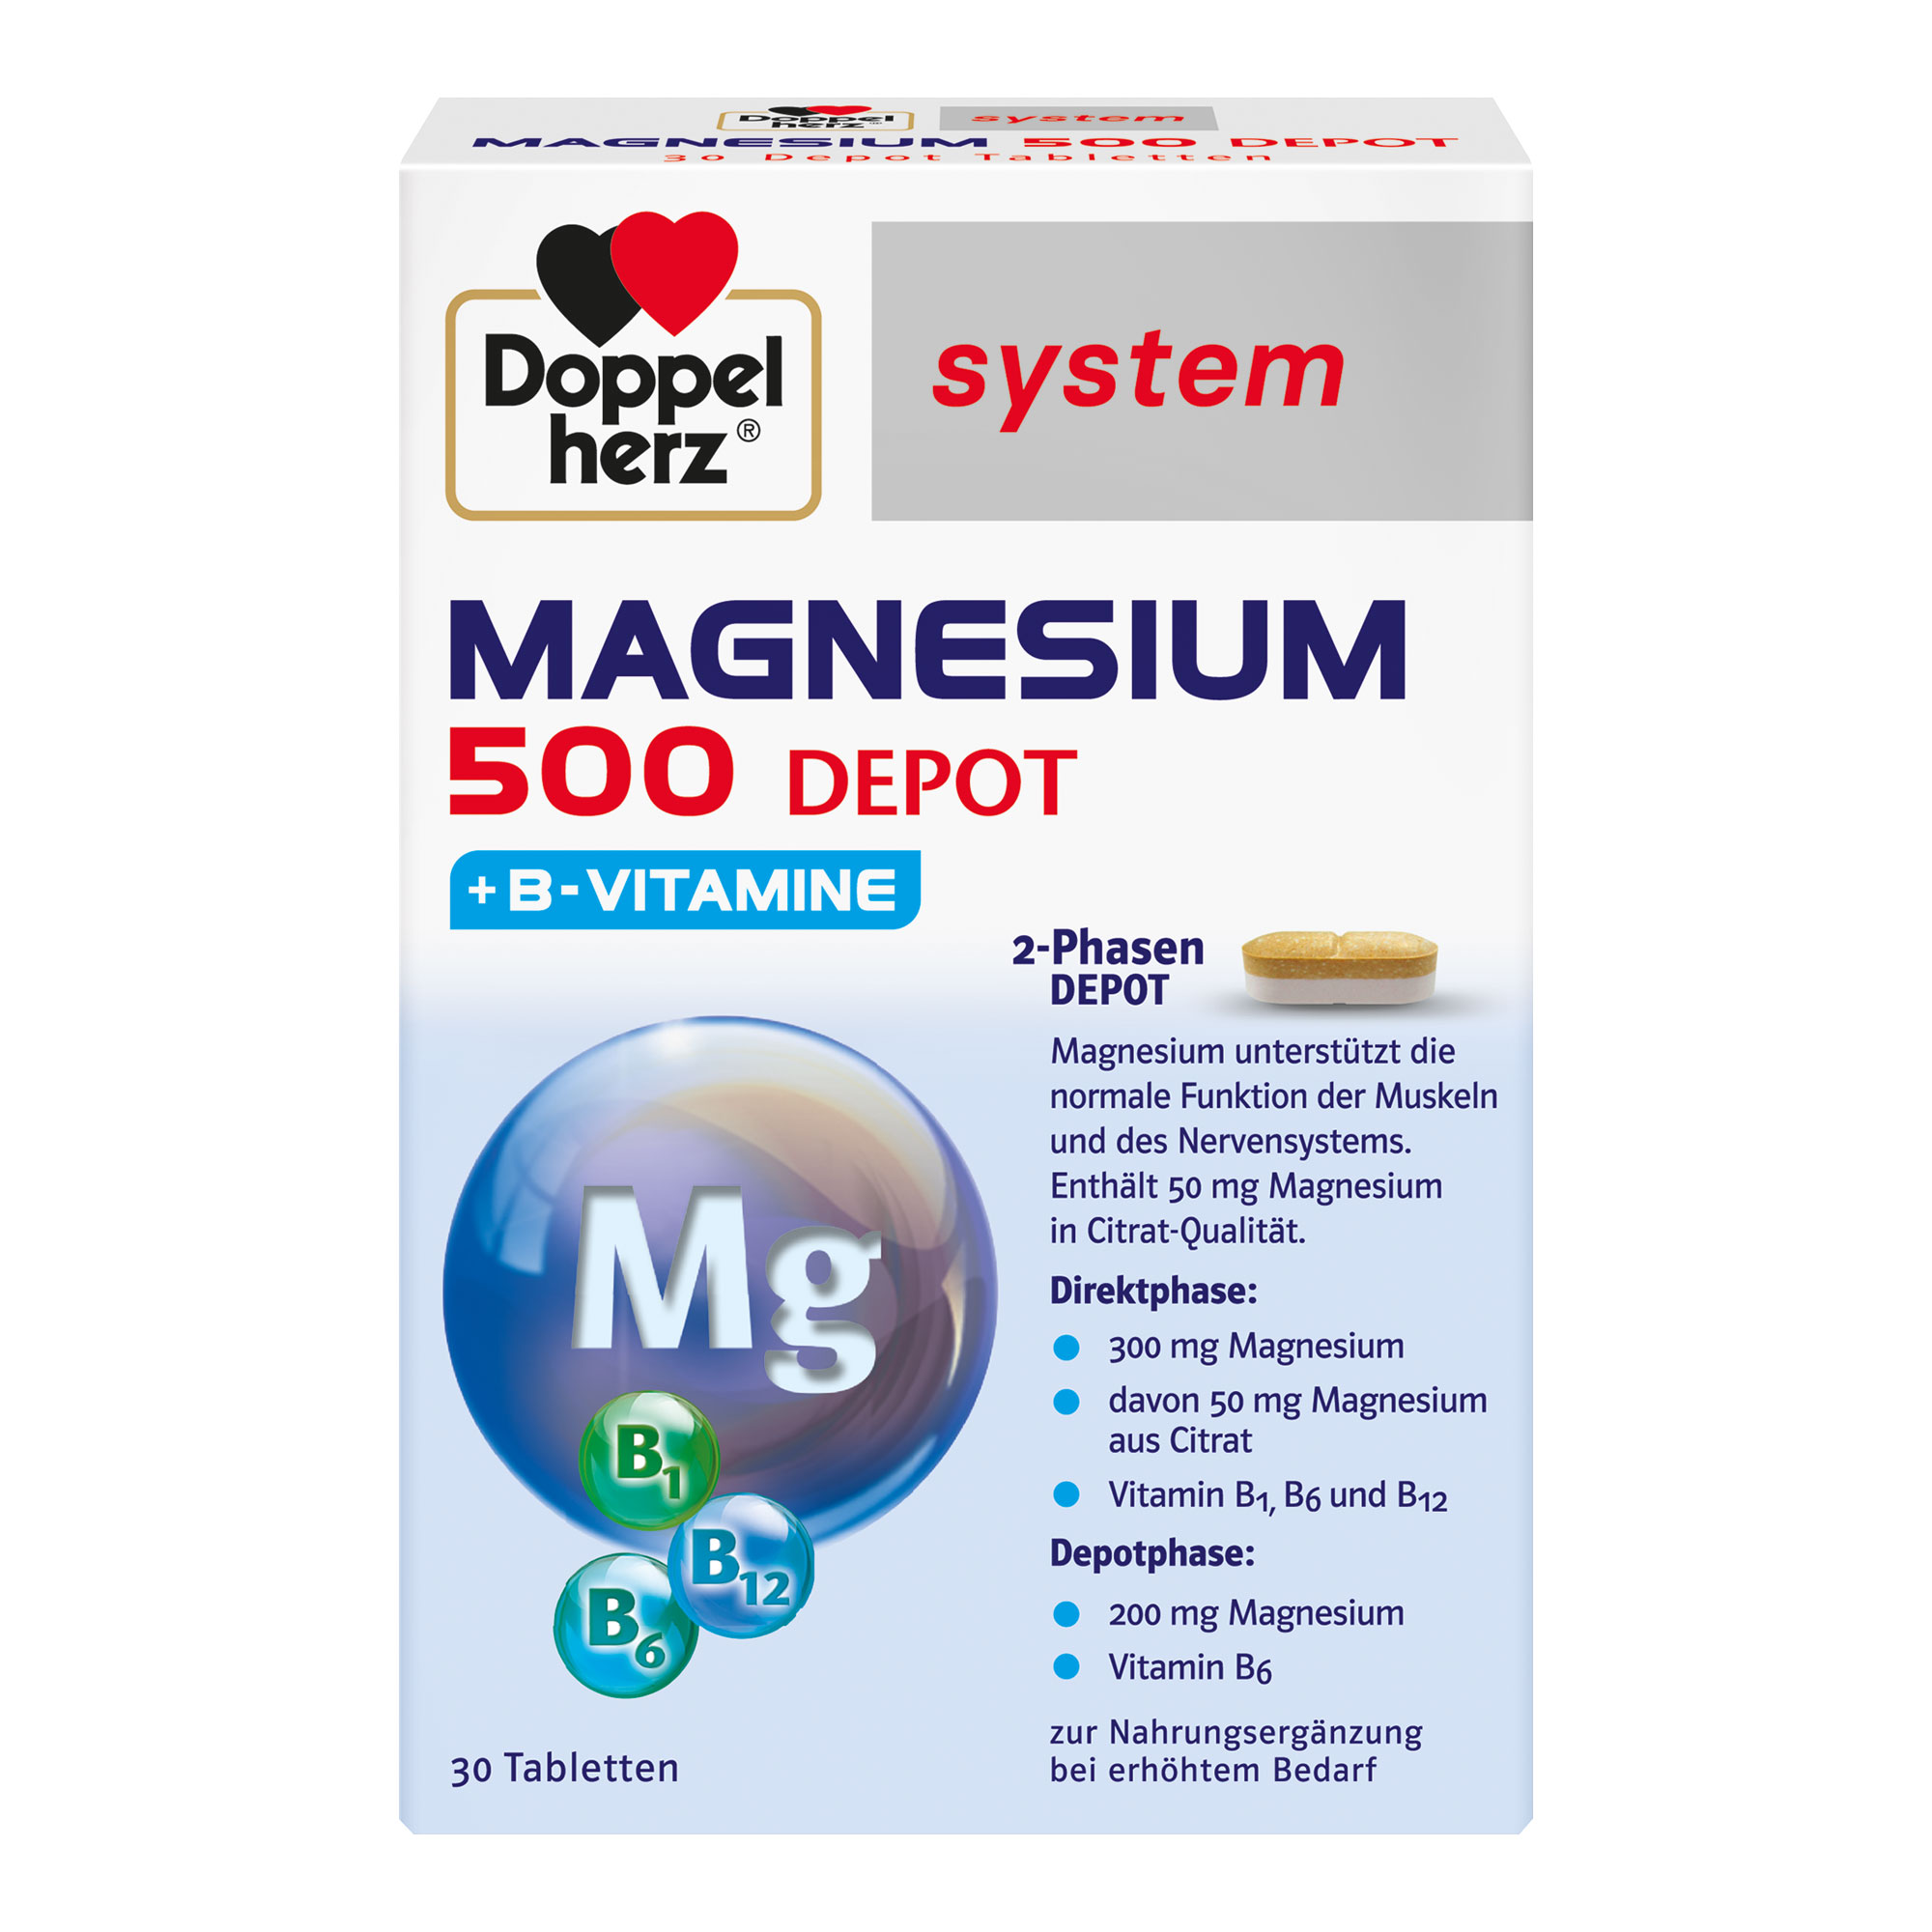 Nahrungsergänzungsmittel mit Magnesium und Vitamin B1, B6 und B12.